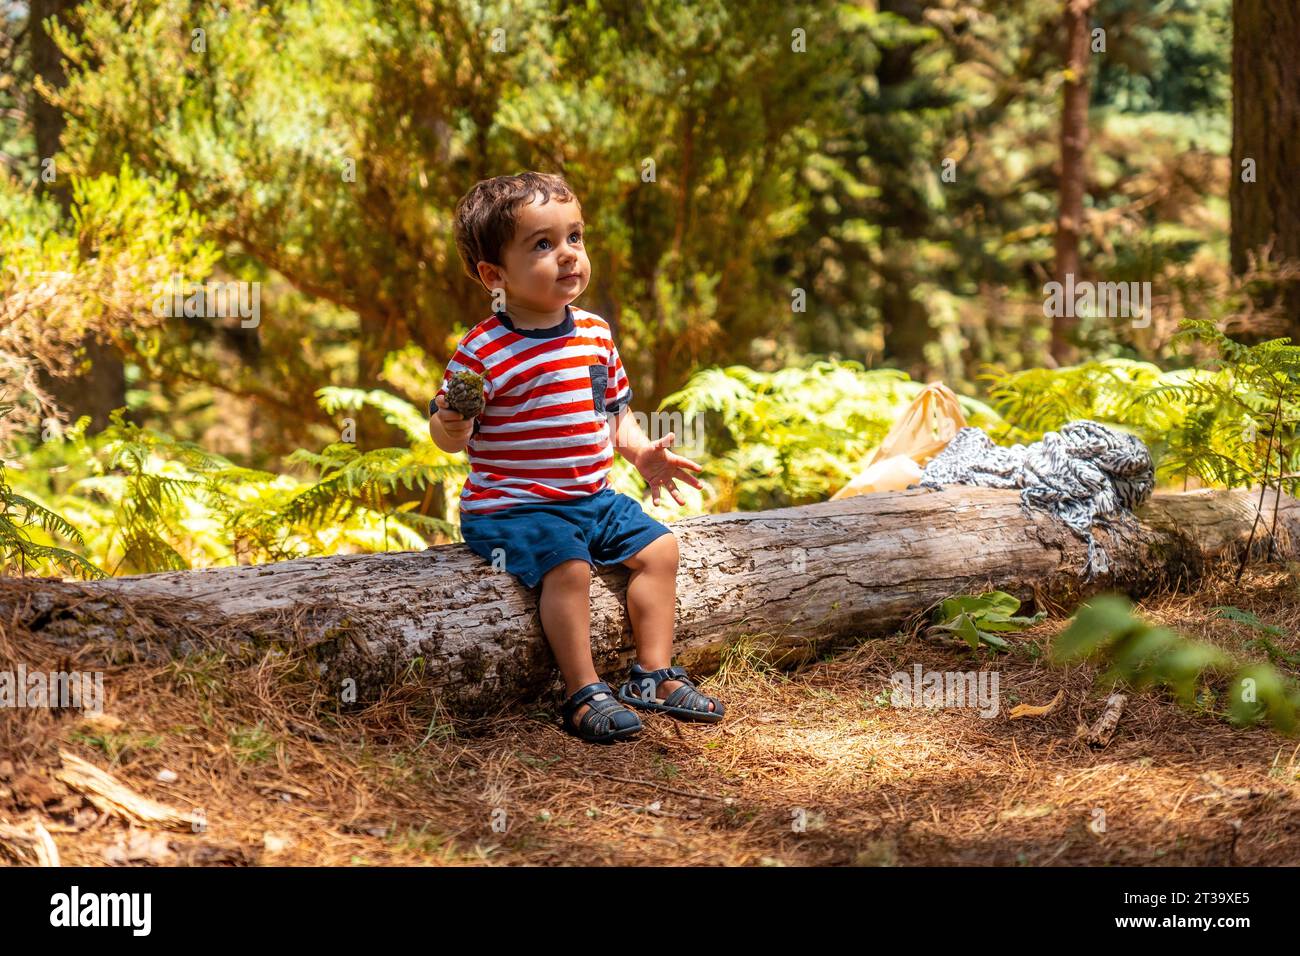 Porträt eines Jungen, der auf einem Baum in der Natur neben Pinienbäumen sitzt, Madeira. Portugal Stock Photo